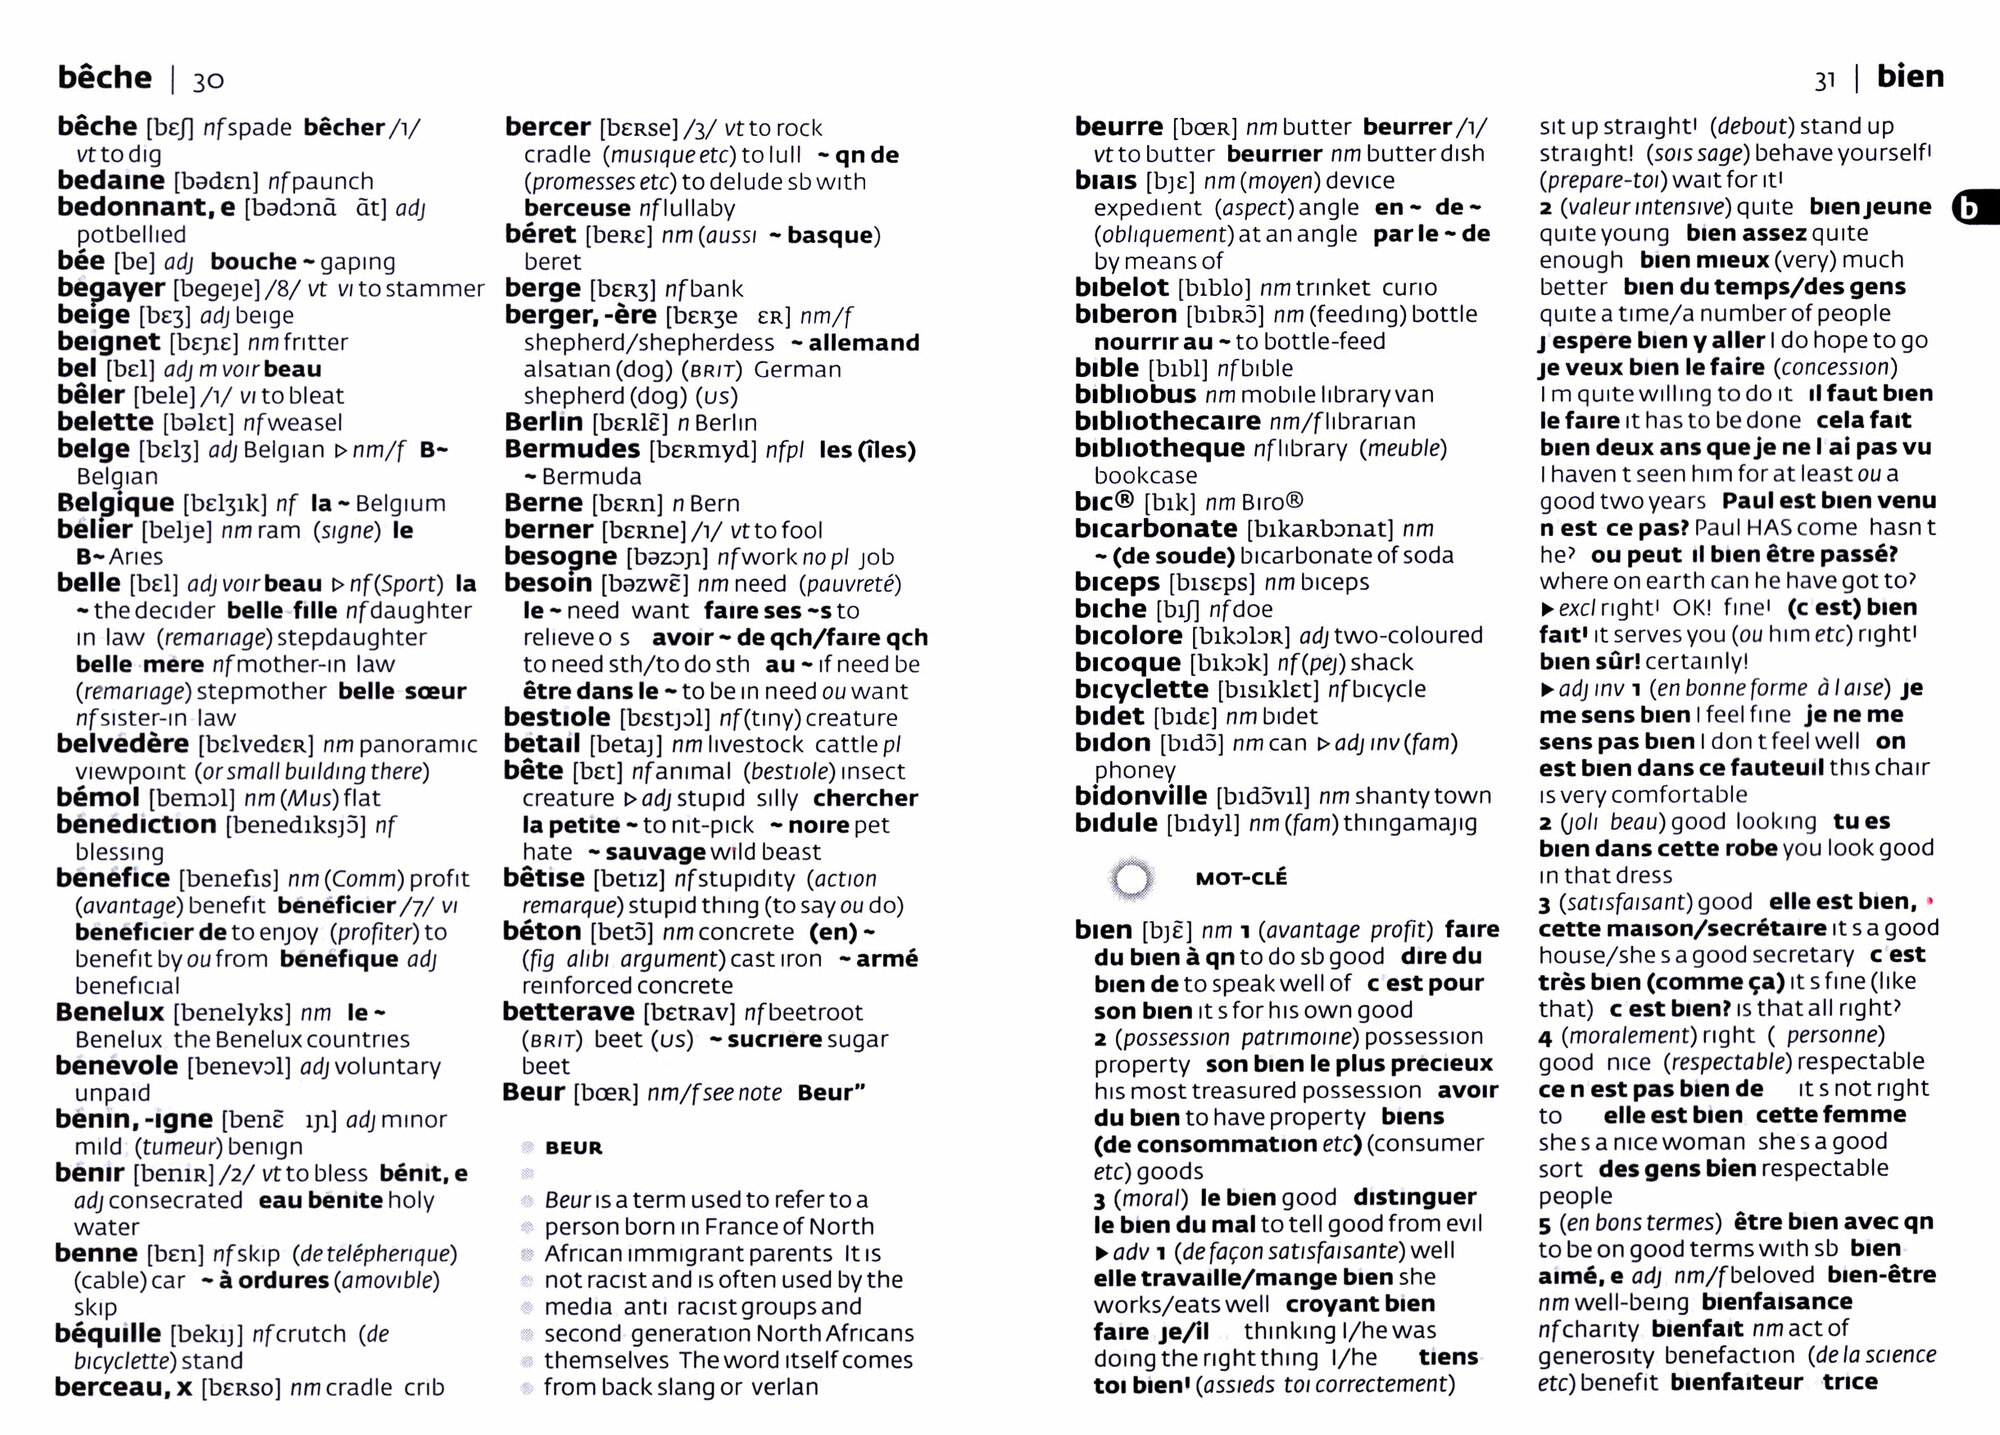 French Pocket Dictionary - фото №2